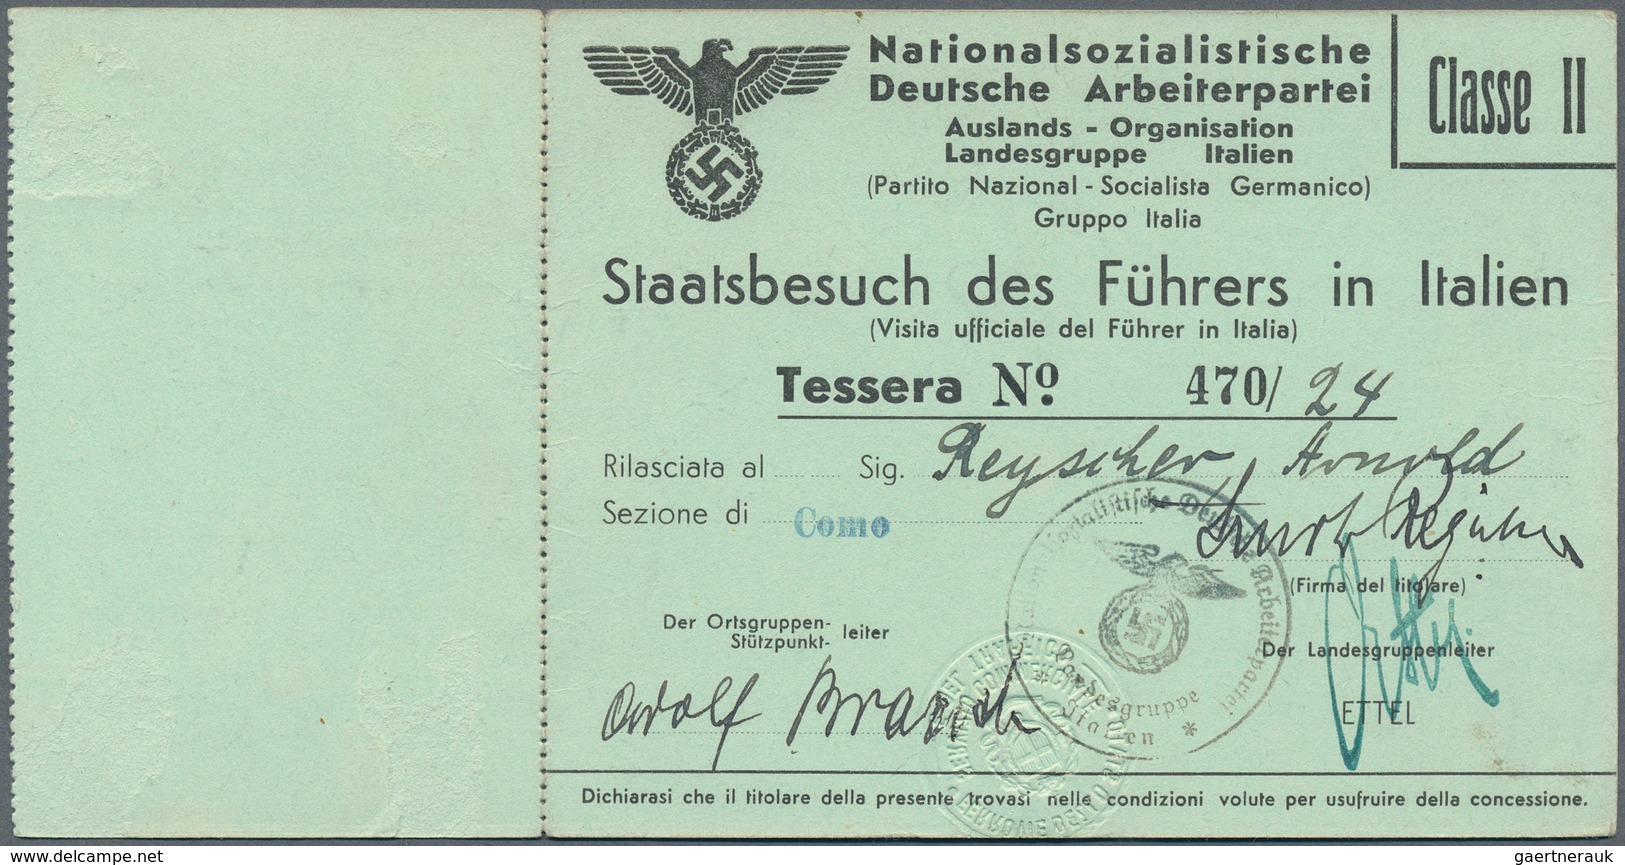 Ansichtskarten: Propaganda: 1938, Einladung Und Eintrittskarte Zum Staatsbesuch Des "Führers" Adolf - Parteien & Wahlen